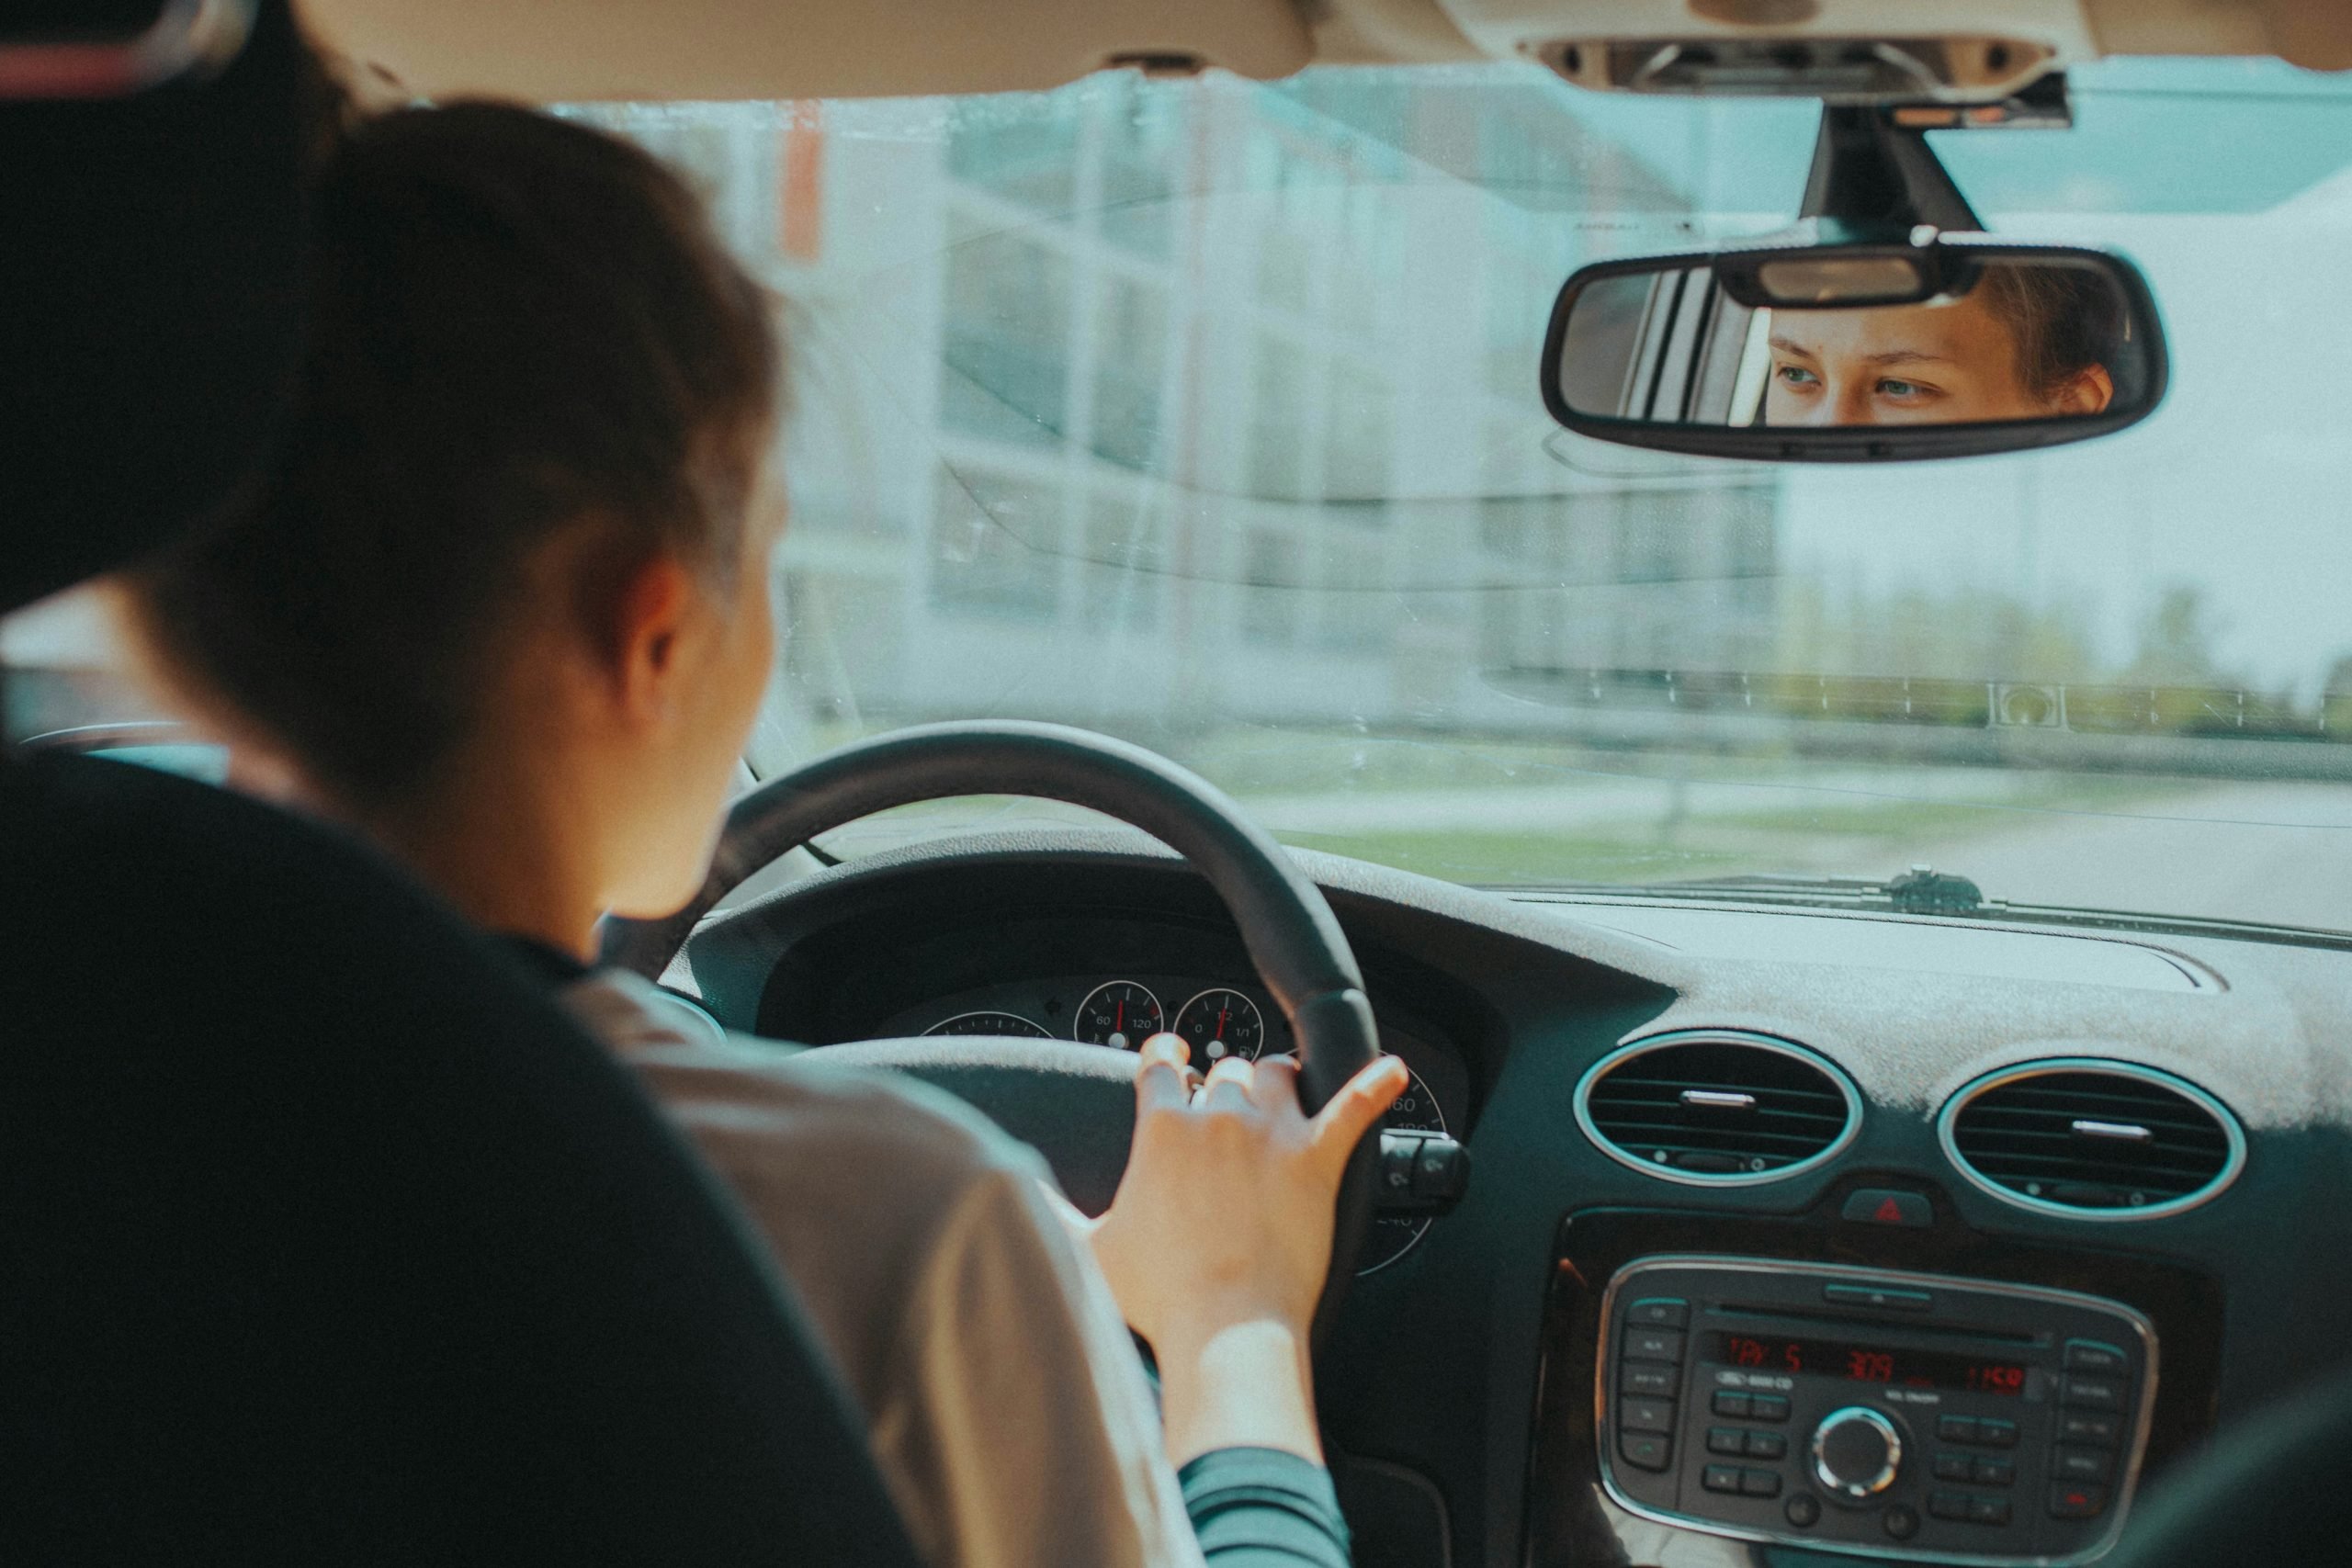 διπλώματα οδήγησης: τέλος στα «φακελάκια» – όλα όσα αλλάζουν με τις νέες υπηρεσίες